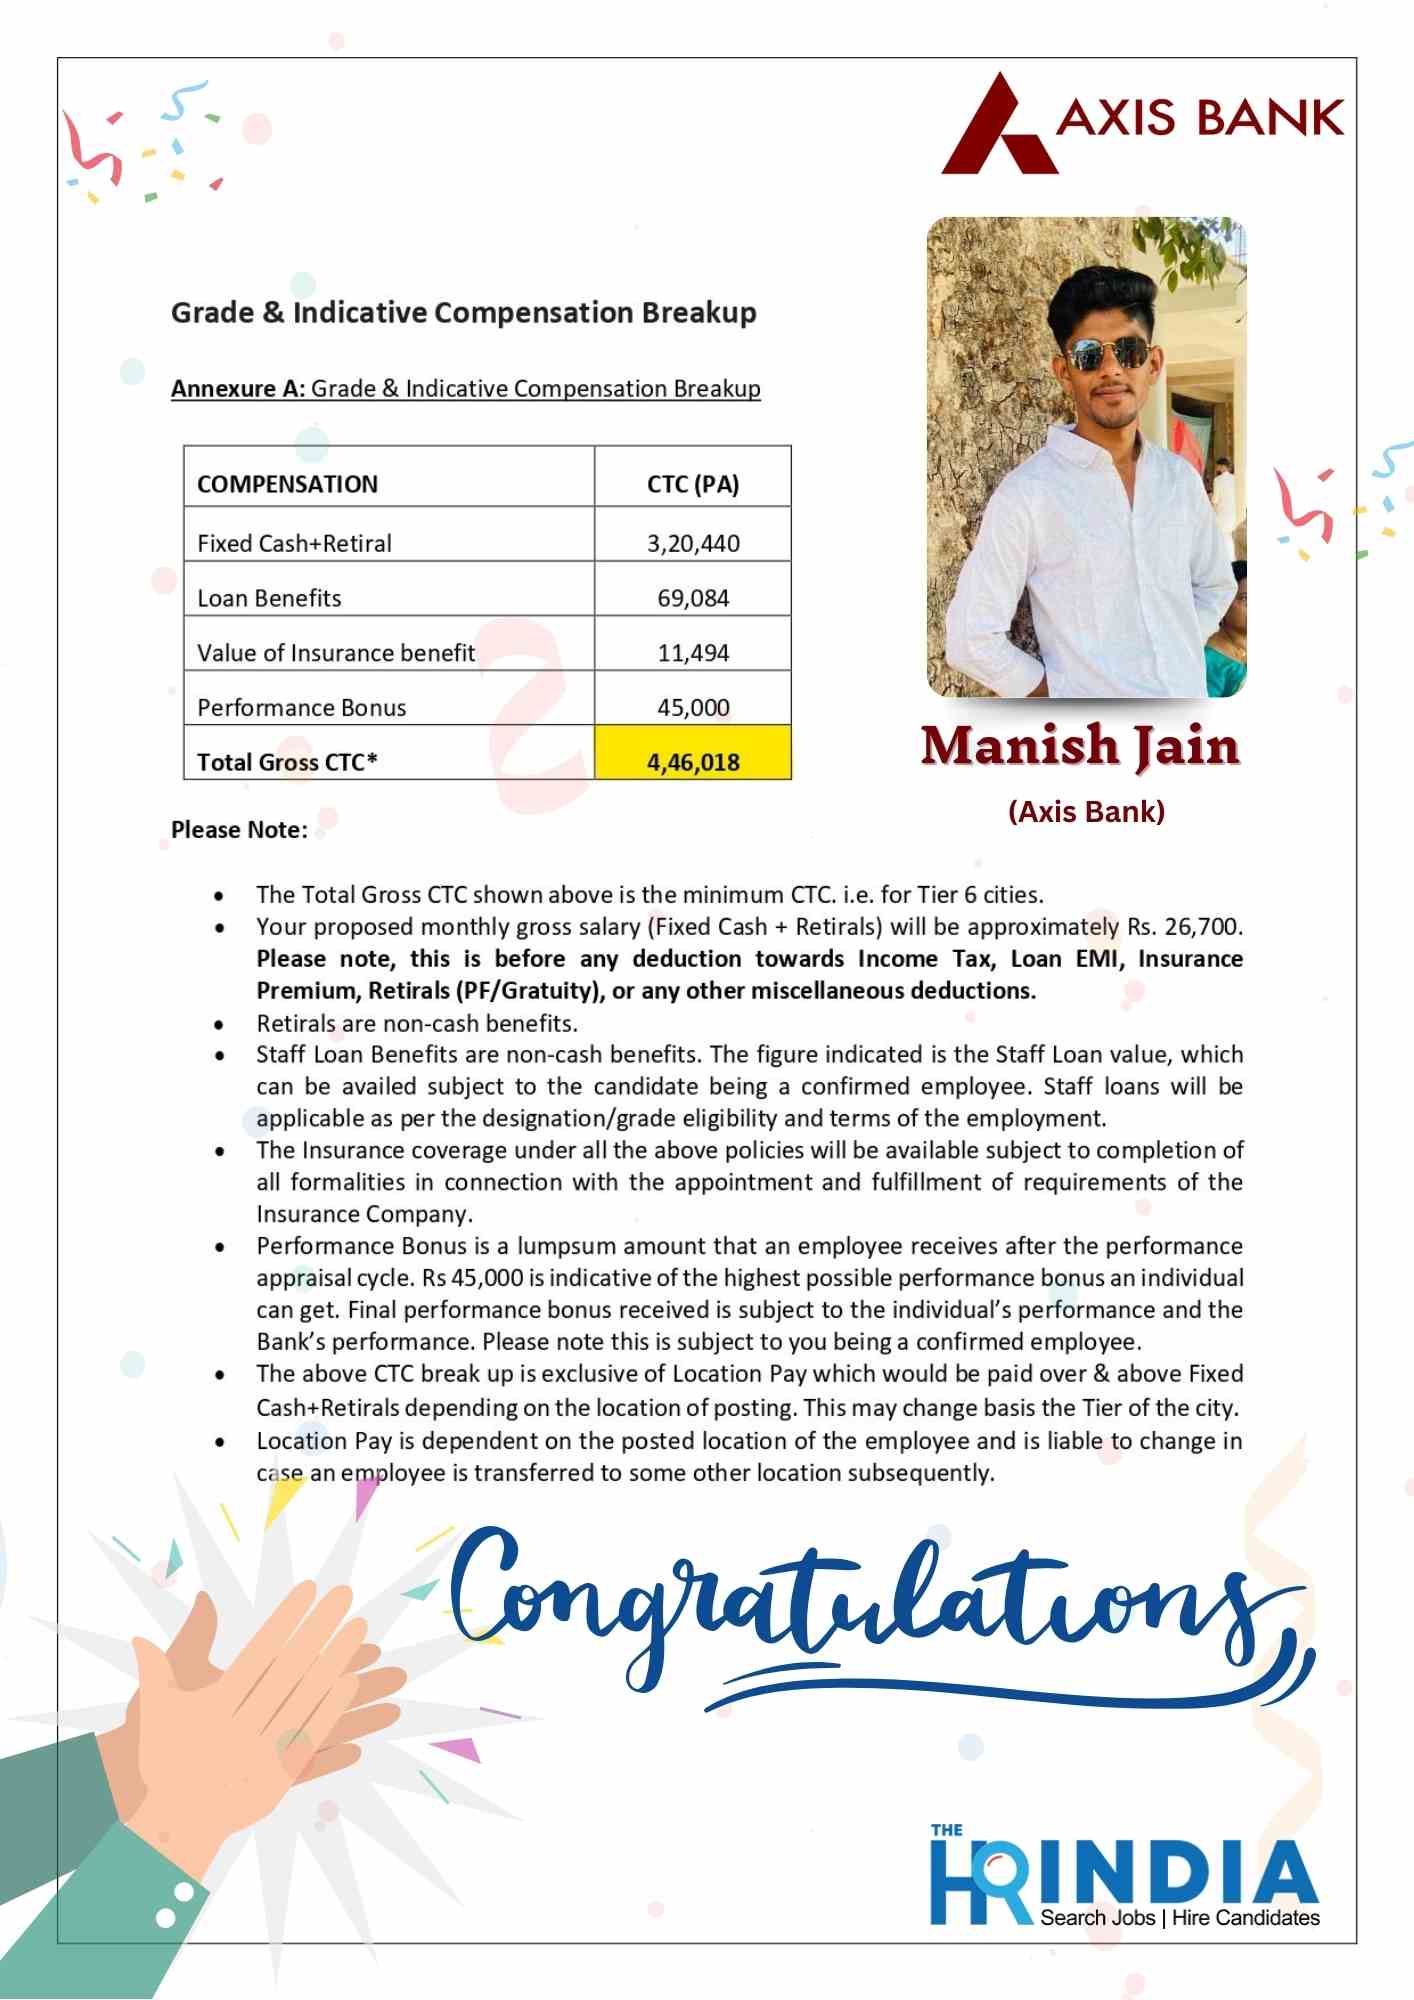 Manish Jain  | The HR India